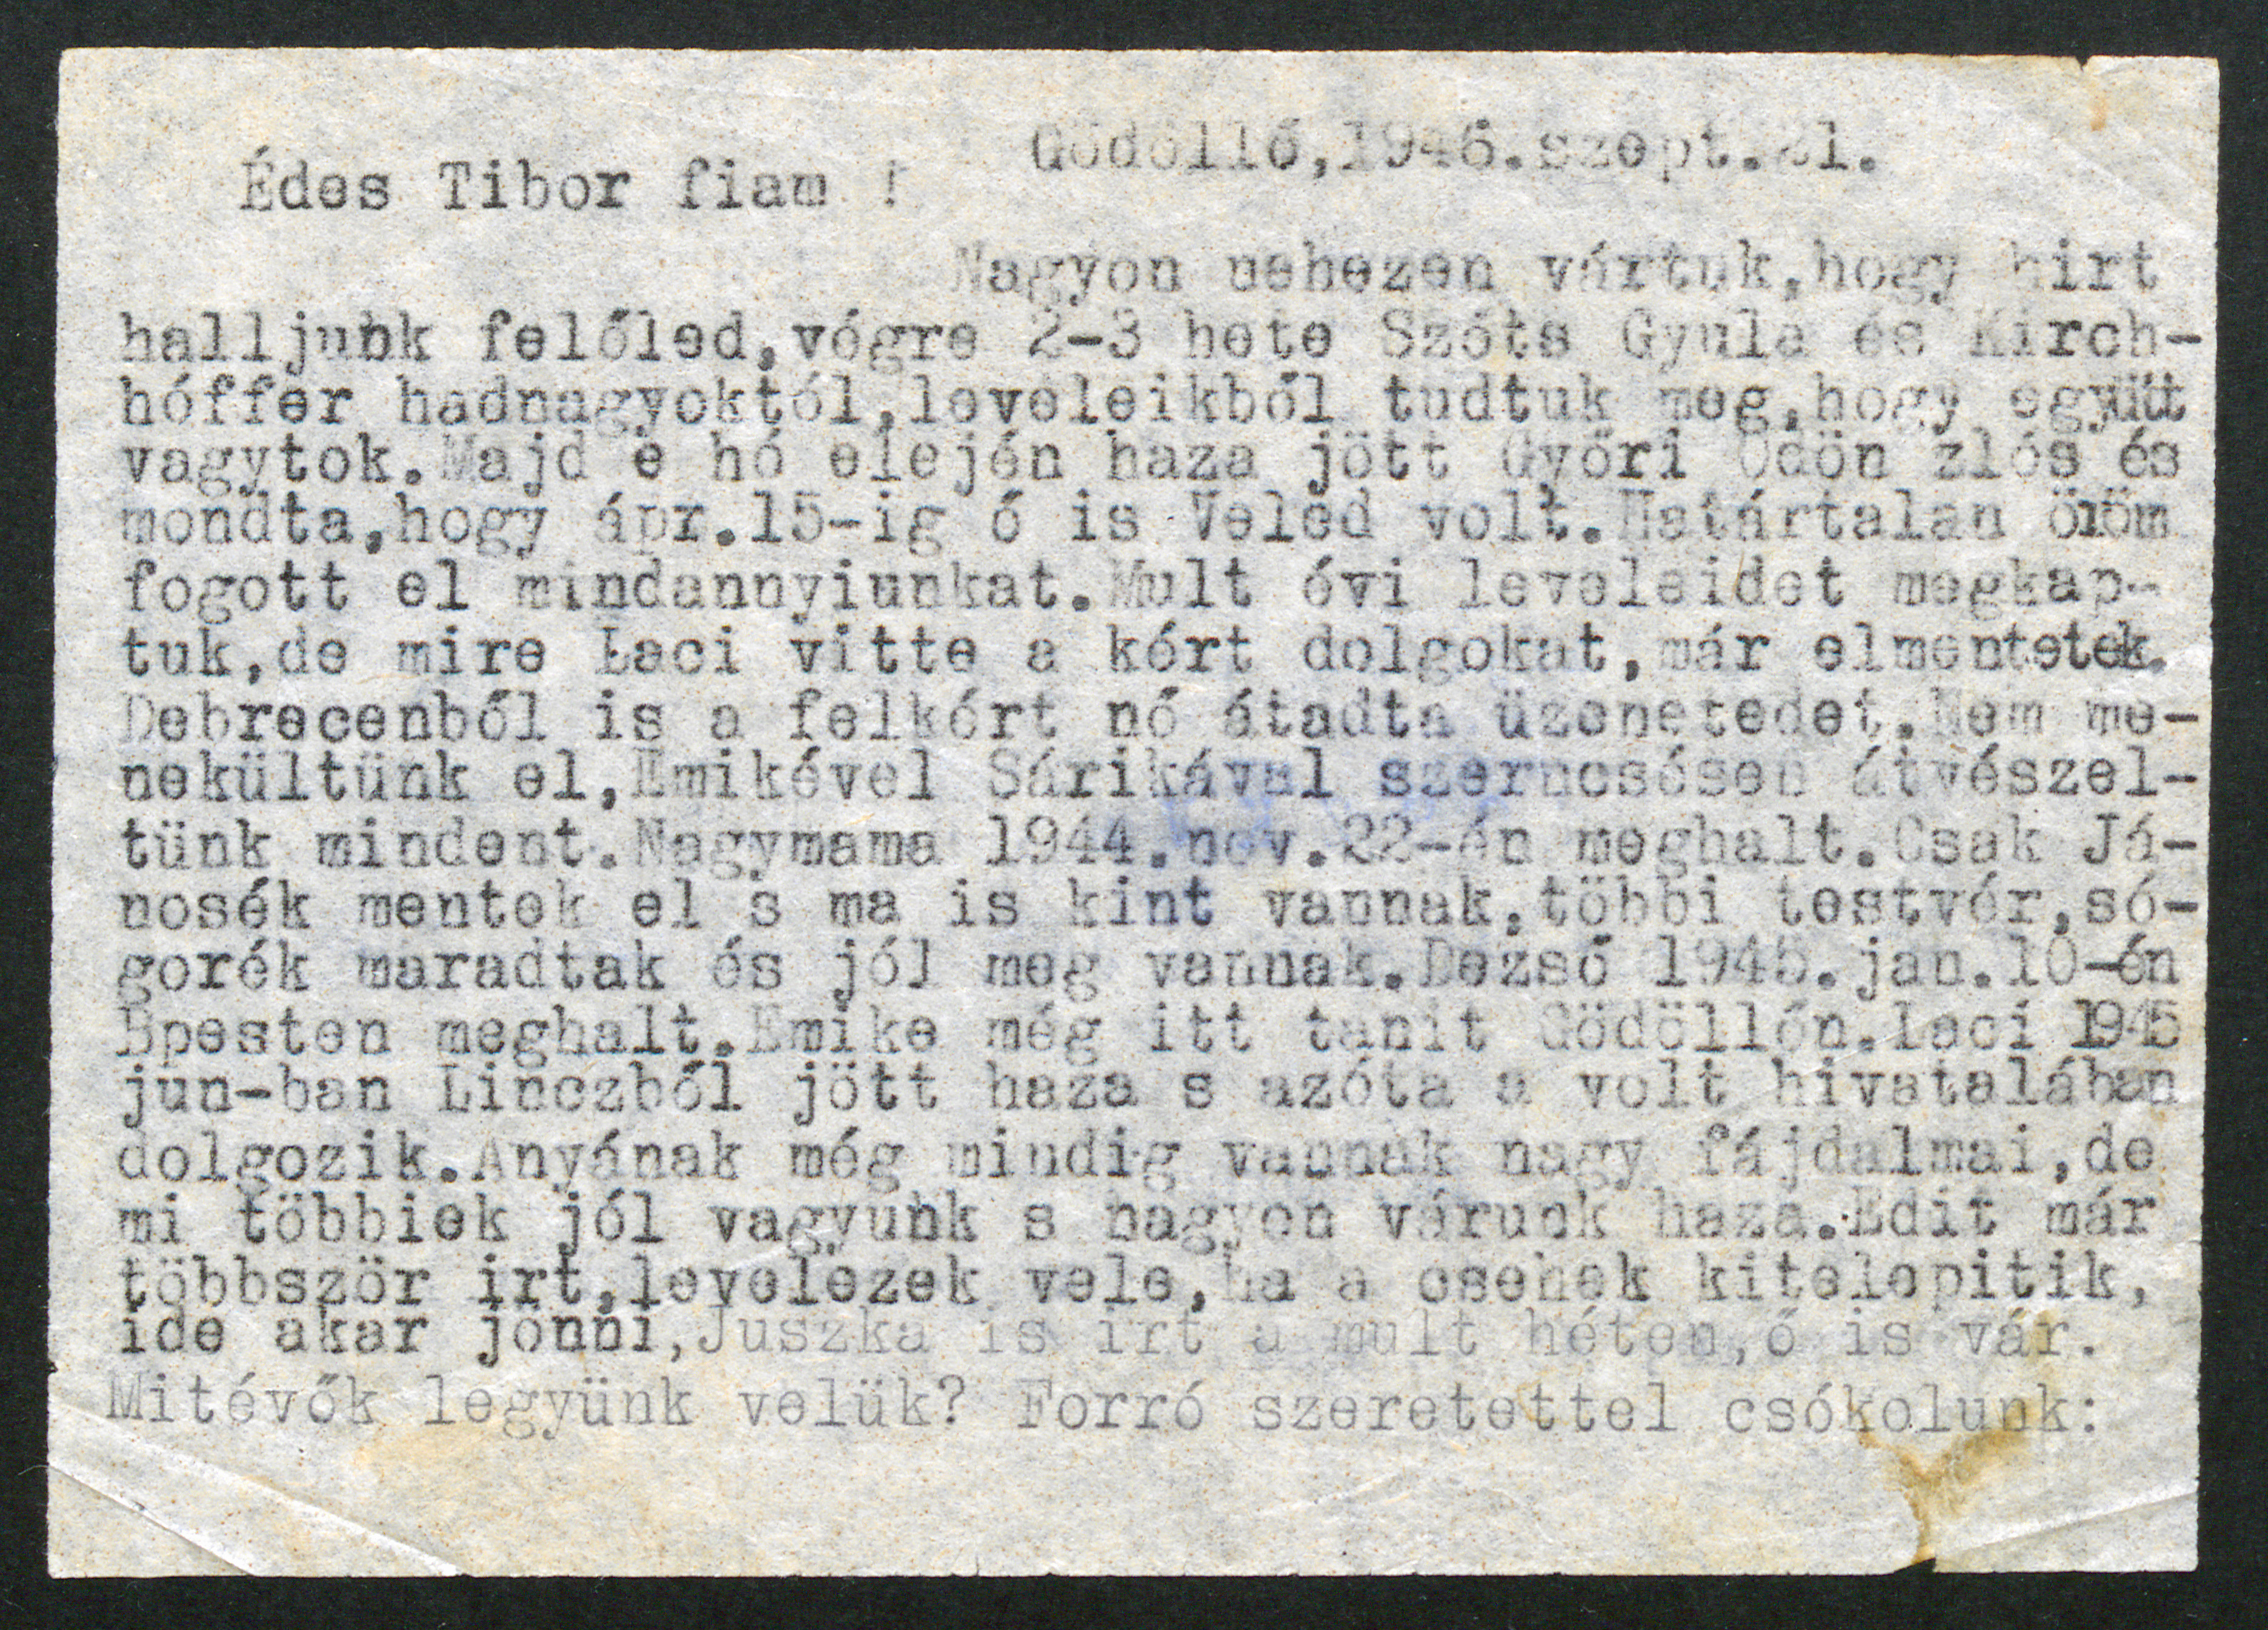 Eördögh Tibor nyugalmazott főjegyző levele fiához, Eördögh Tiborhoz, 1946. szeptember 21.